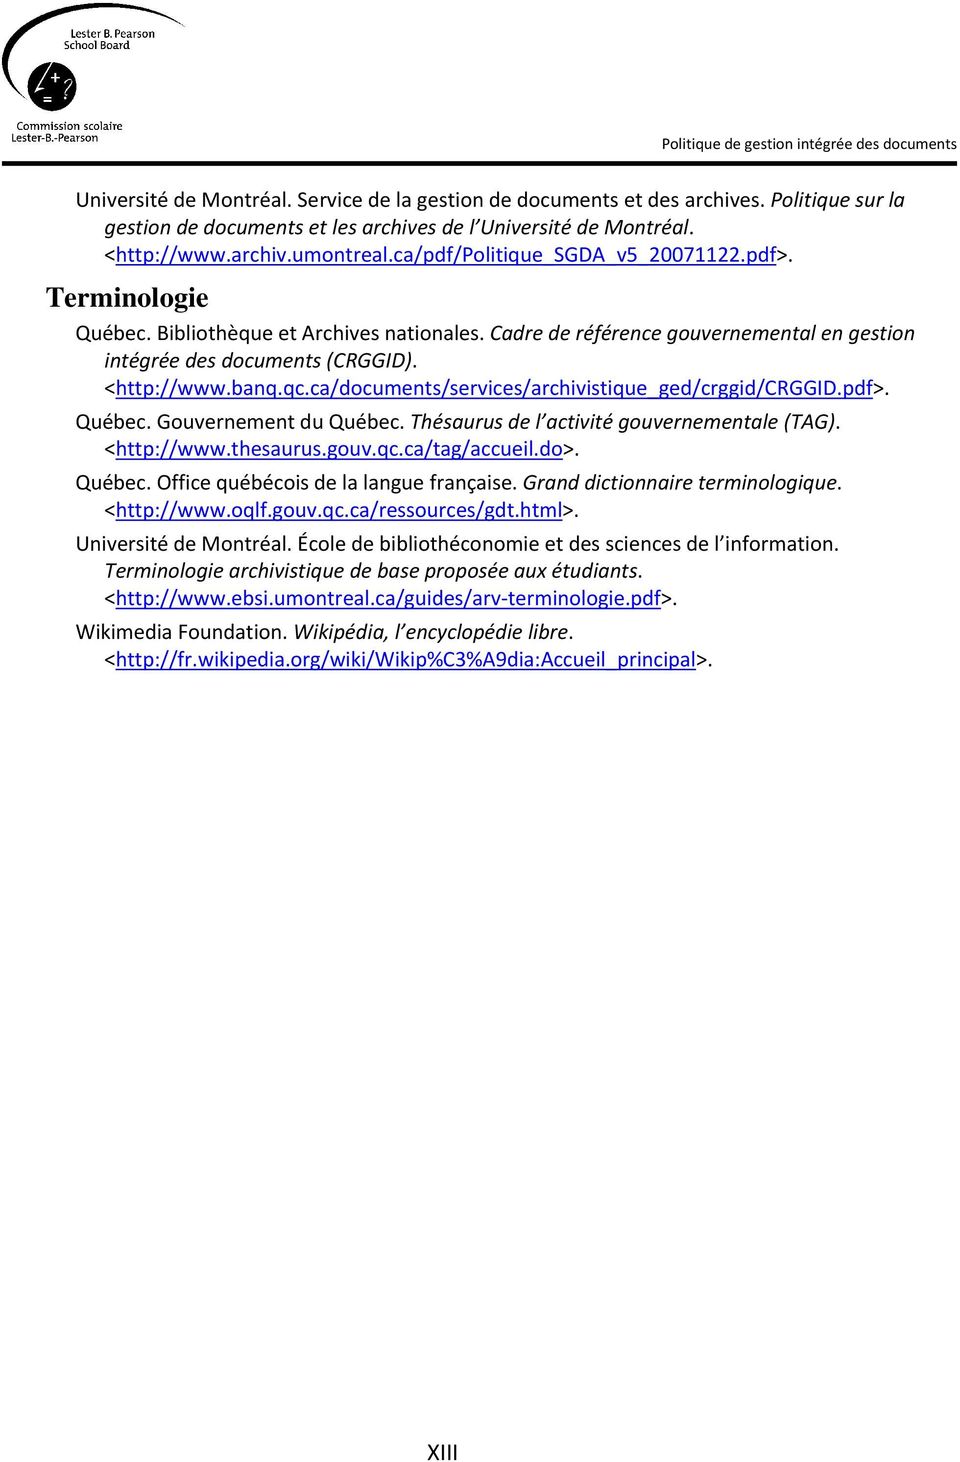 ca/documents/services/archivistique_ged/crggid/crggid.pdf>. Québec. Gouvernement du Québec. Thésaurus de l activité gouvernementale (TAG). <http://www.thesaurus.gouv.qc.ca/tag/accueil.do>. Québec. Office québécois de la langue française.